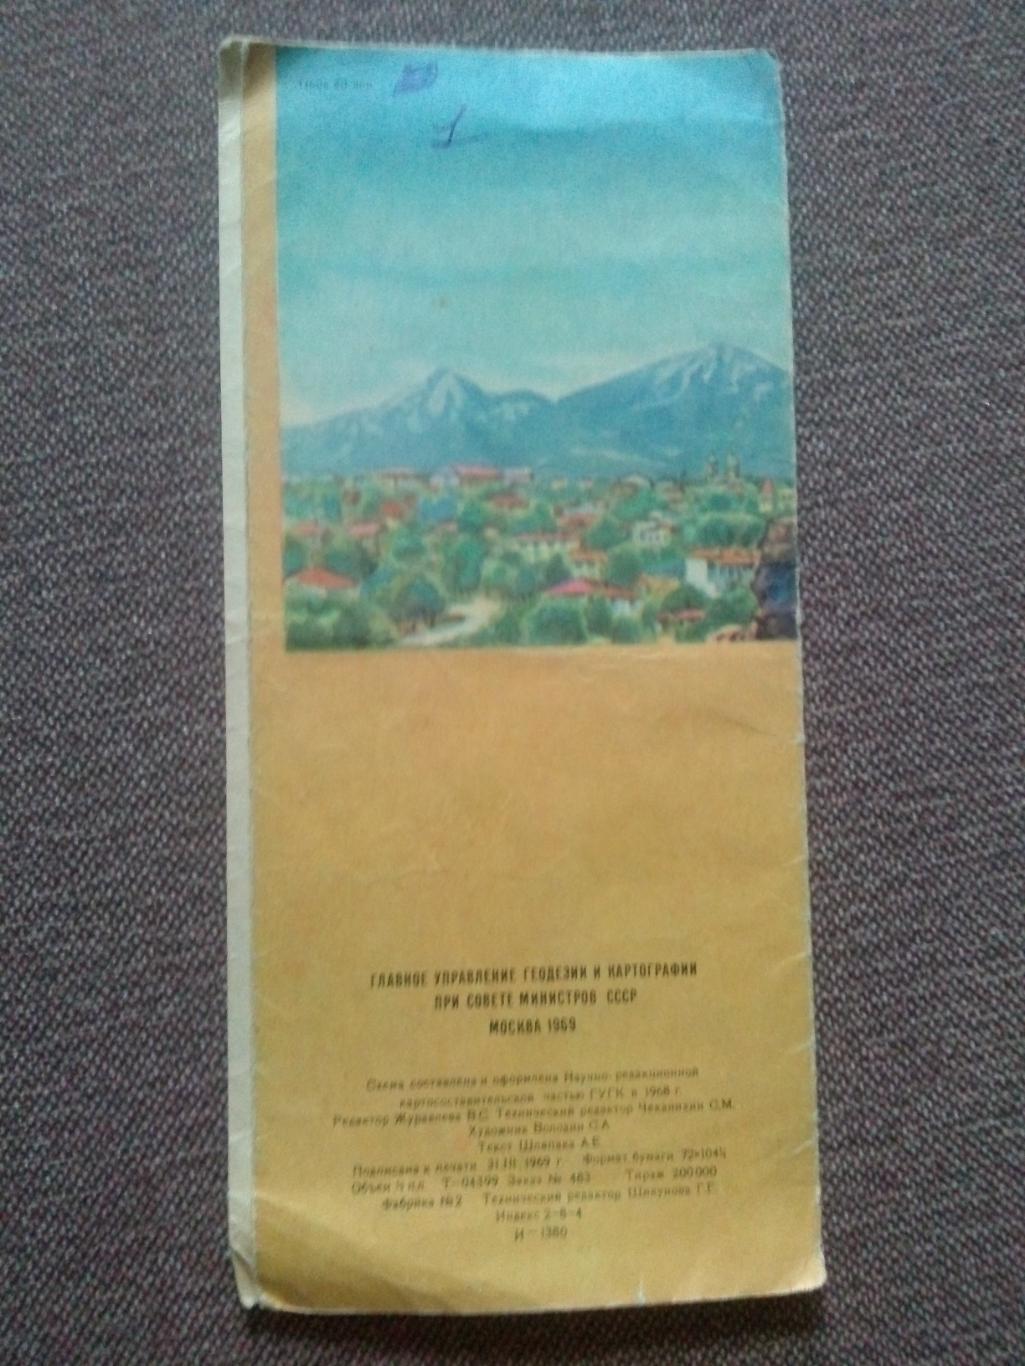 Карта (туристская схема) : Район Кавказских Минеральных вод 1969 г. Туризм СССР 1